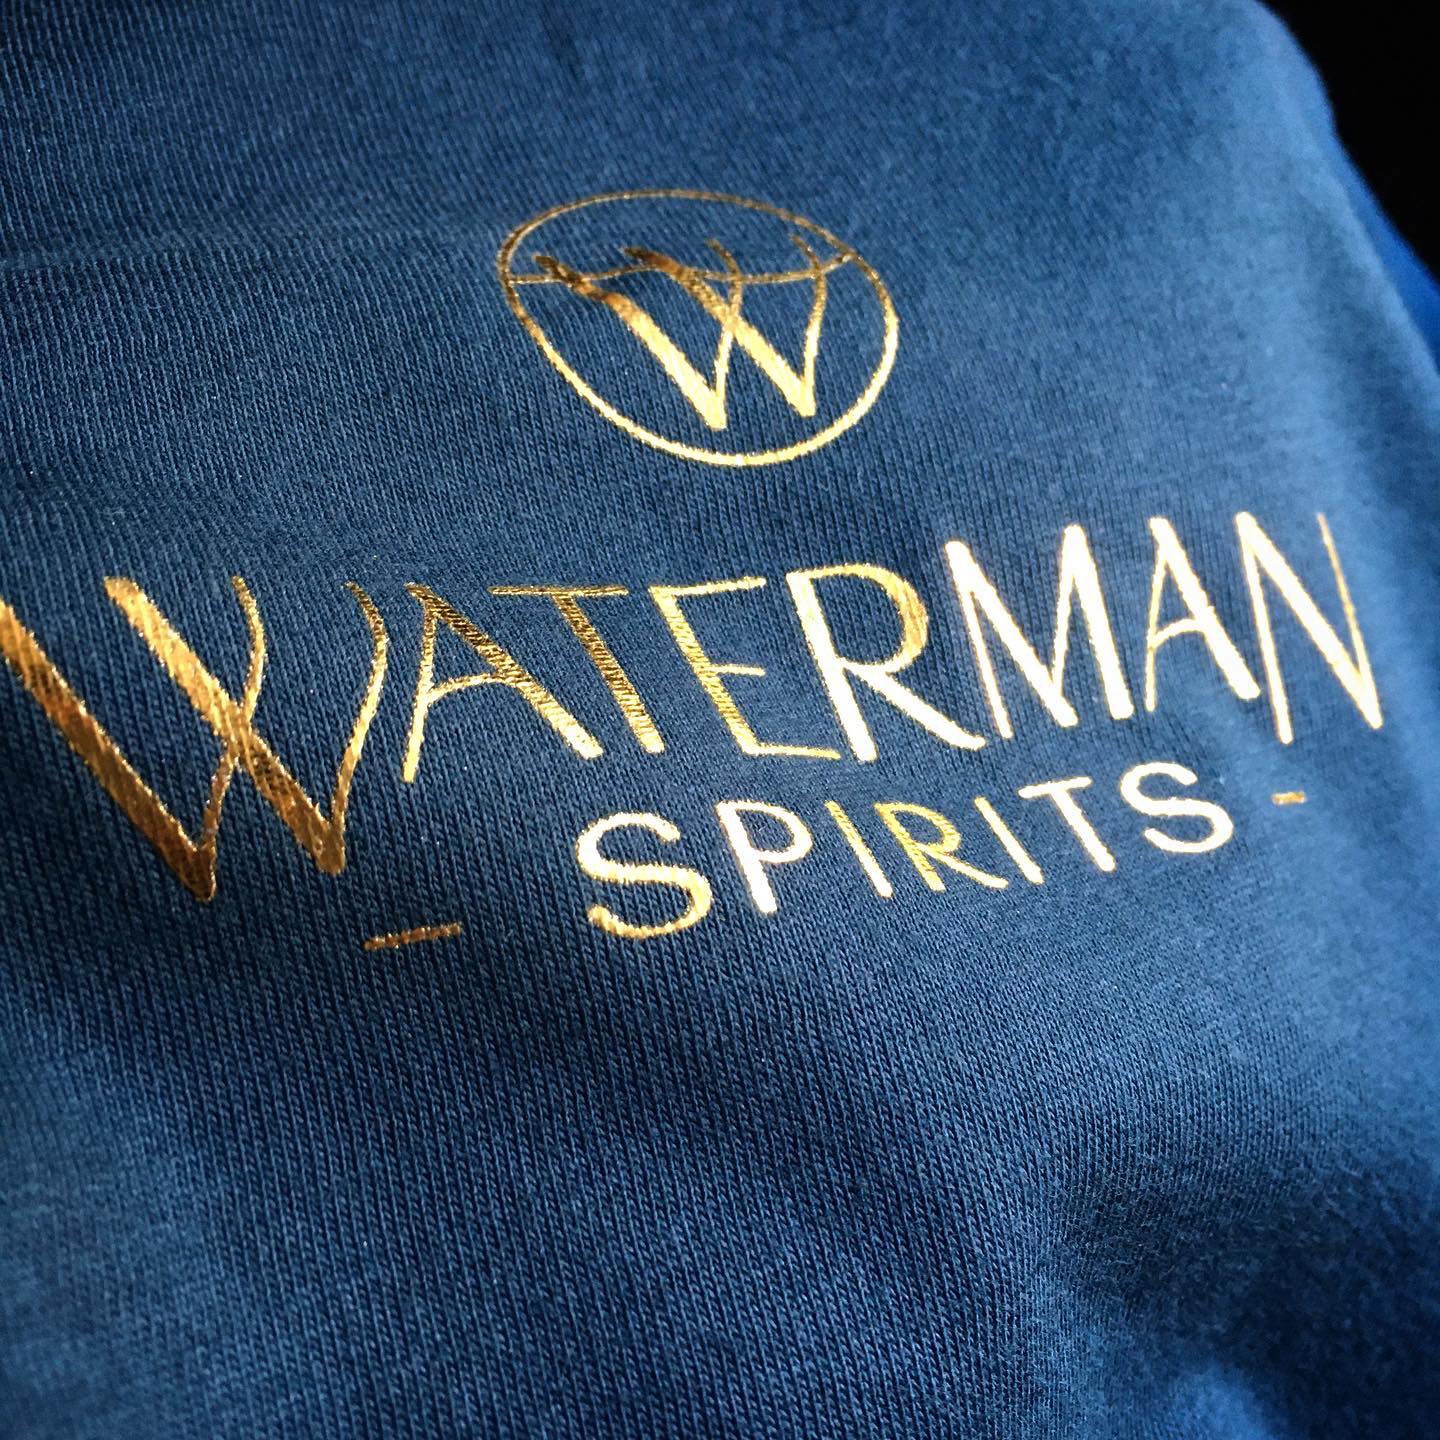 Waterman Spirits gold foil screen printing